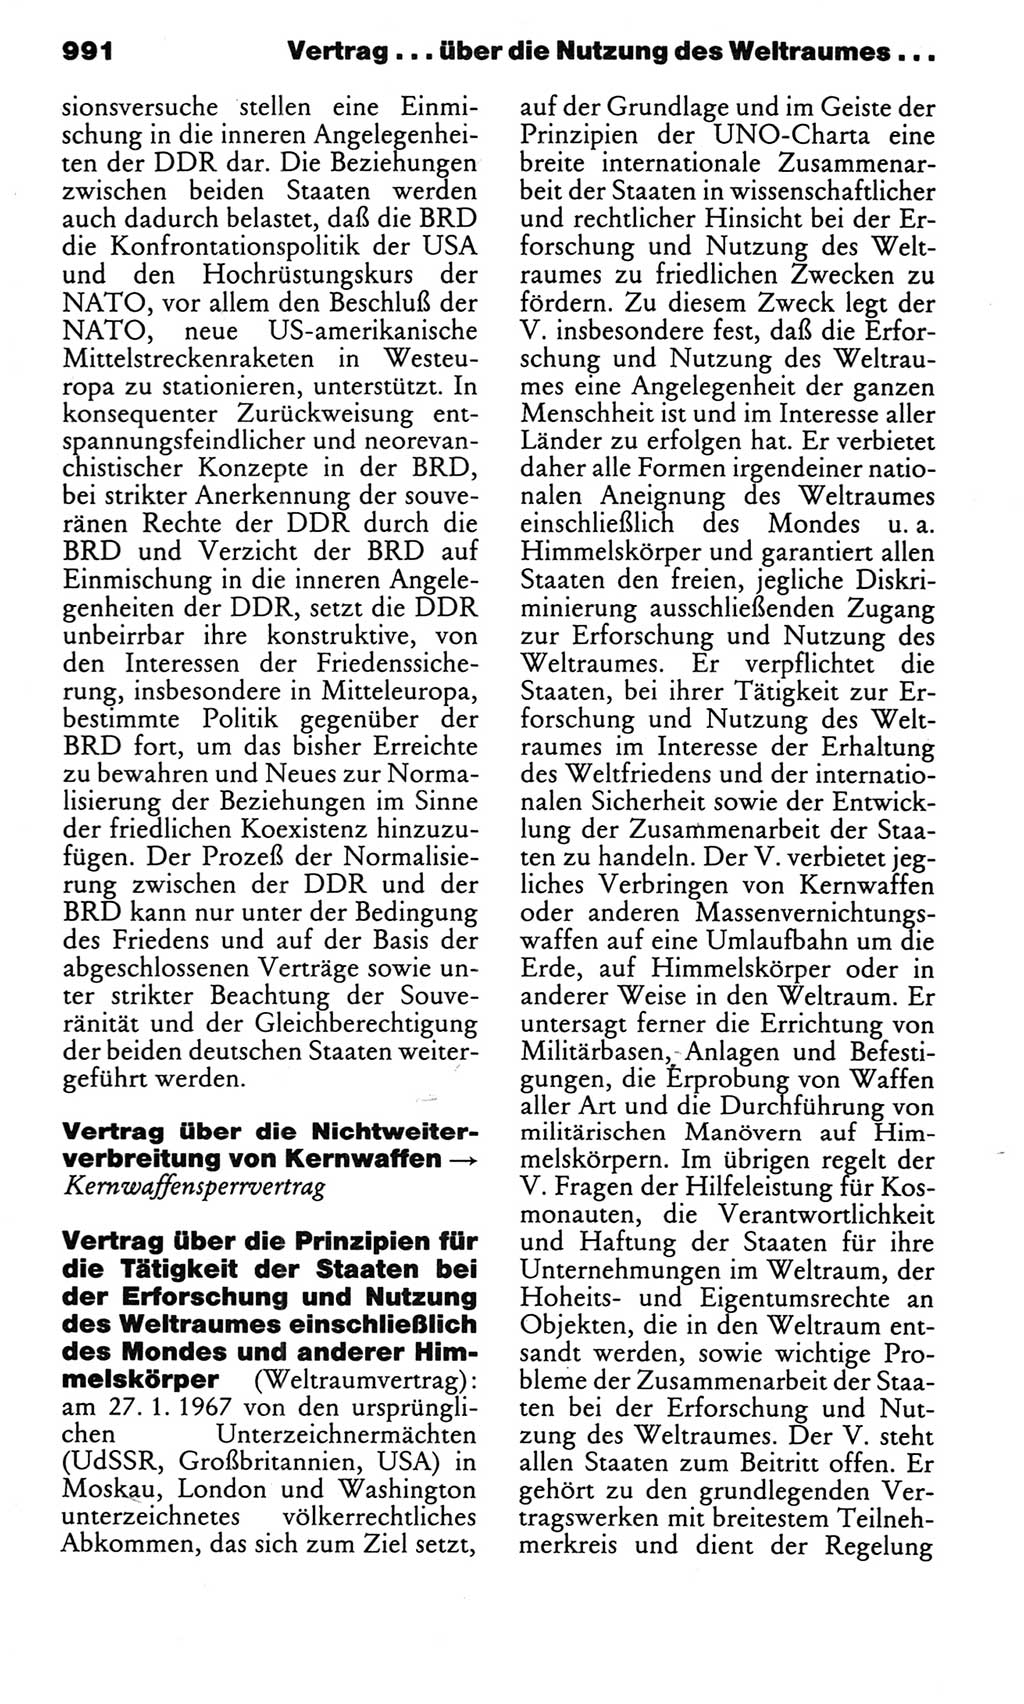 Kleines politisches Wörterbuch [Deutsche Demokratische Republik (DDR)] 1983, Seite 991 (Kl. pol. Wb. DDR 1983, S. 991)